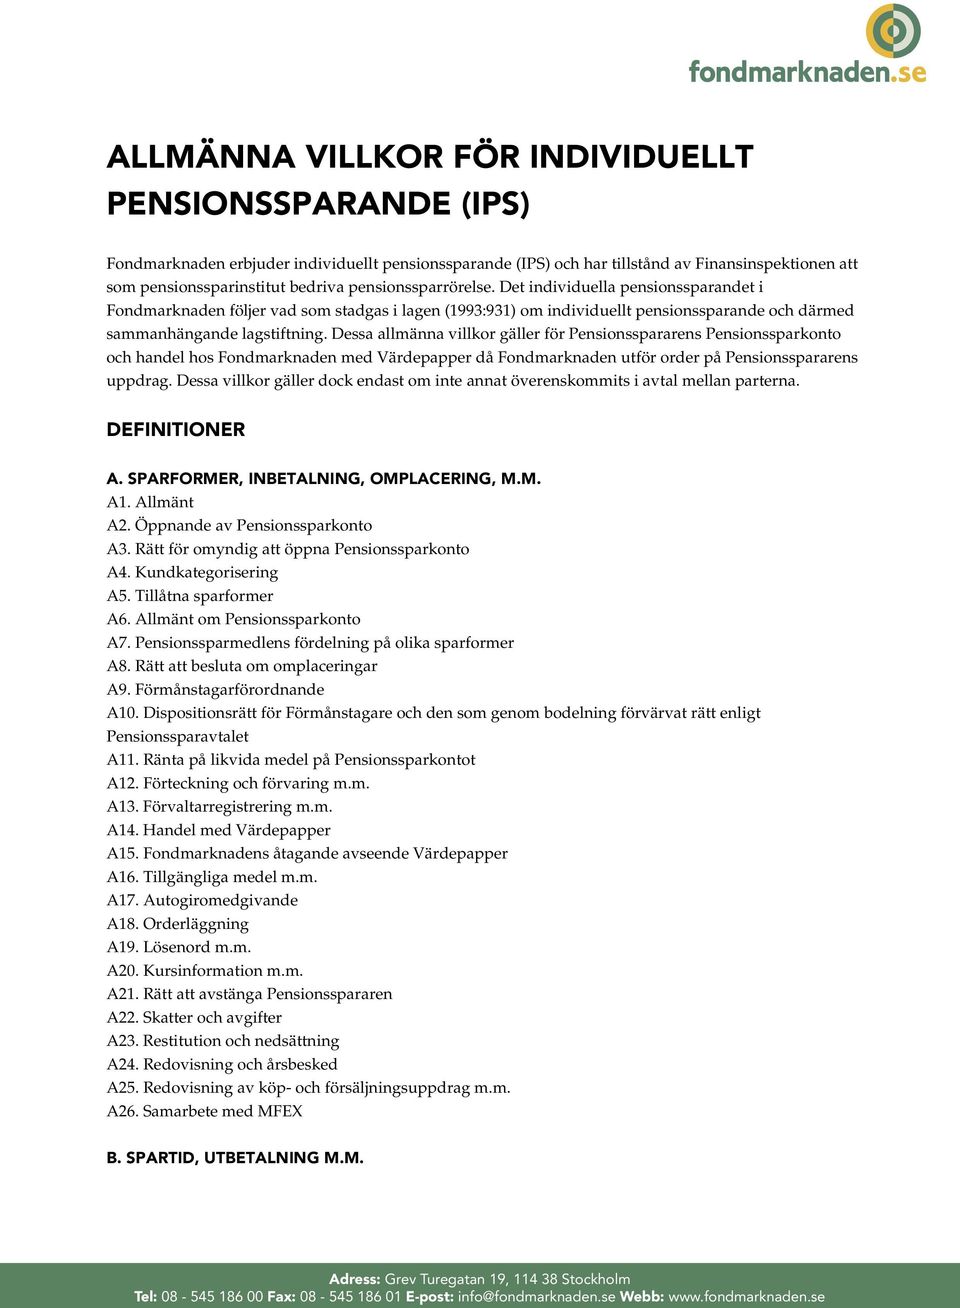 Dessa allmänna villkor gäller för Pensionsspararens Pensionssparkonto och handel hos Fondmarknaden med Värdepapper då Fondmarknaden utför order på Pensionsspararens uppdrag.